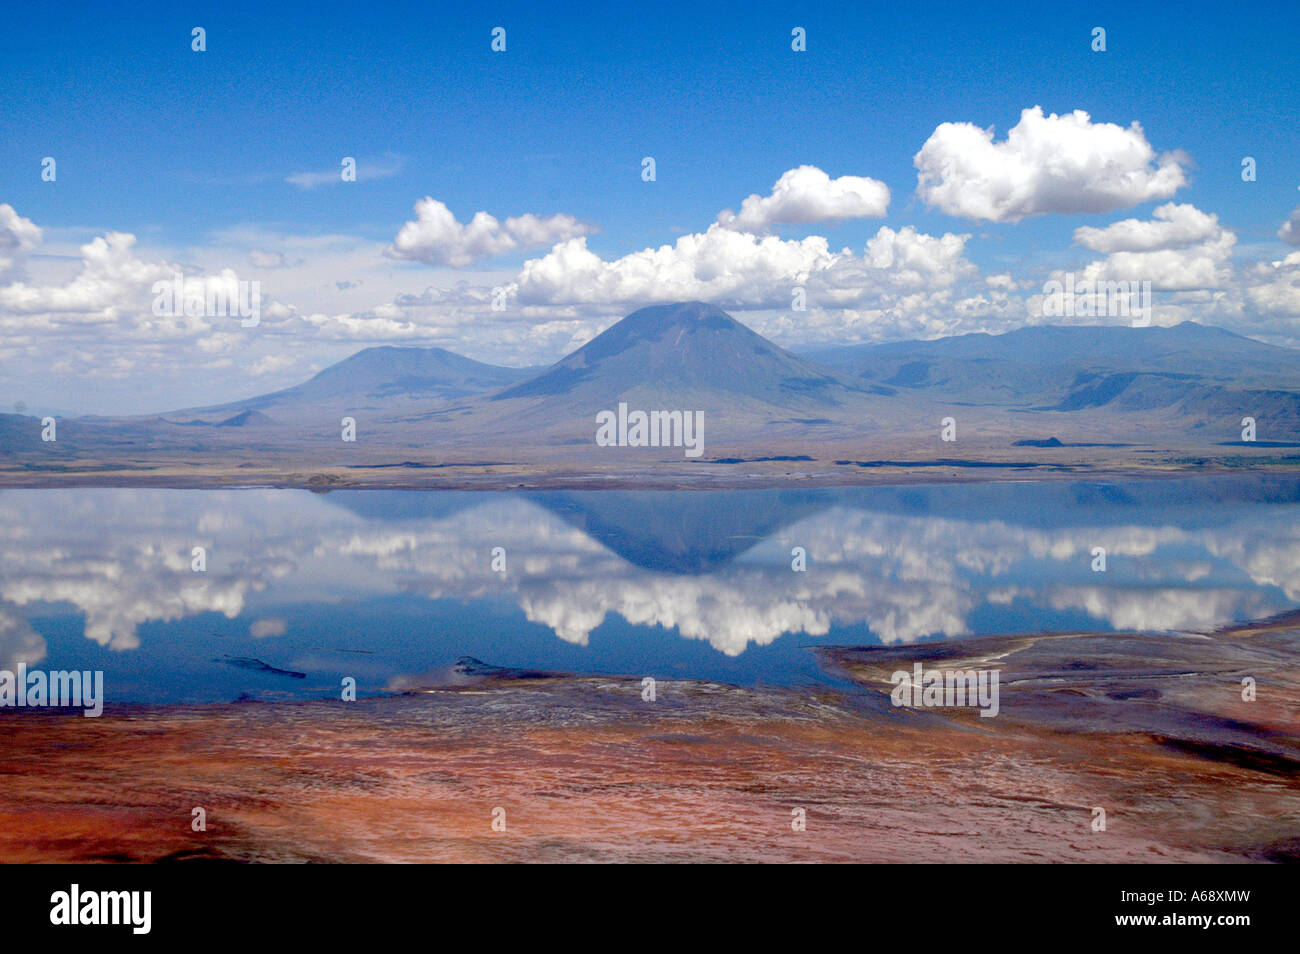 Vista aérea del lago Natron, y el volcán Ol Doinyo Lengai, Tanzania. El pigmento rojo en las cianobacterias producen un color rojo. Foto de stock